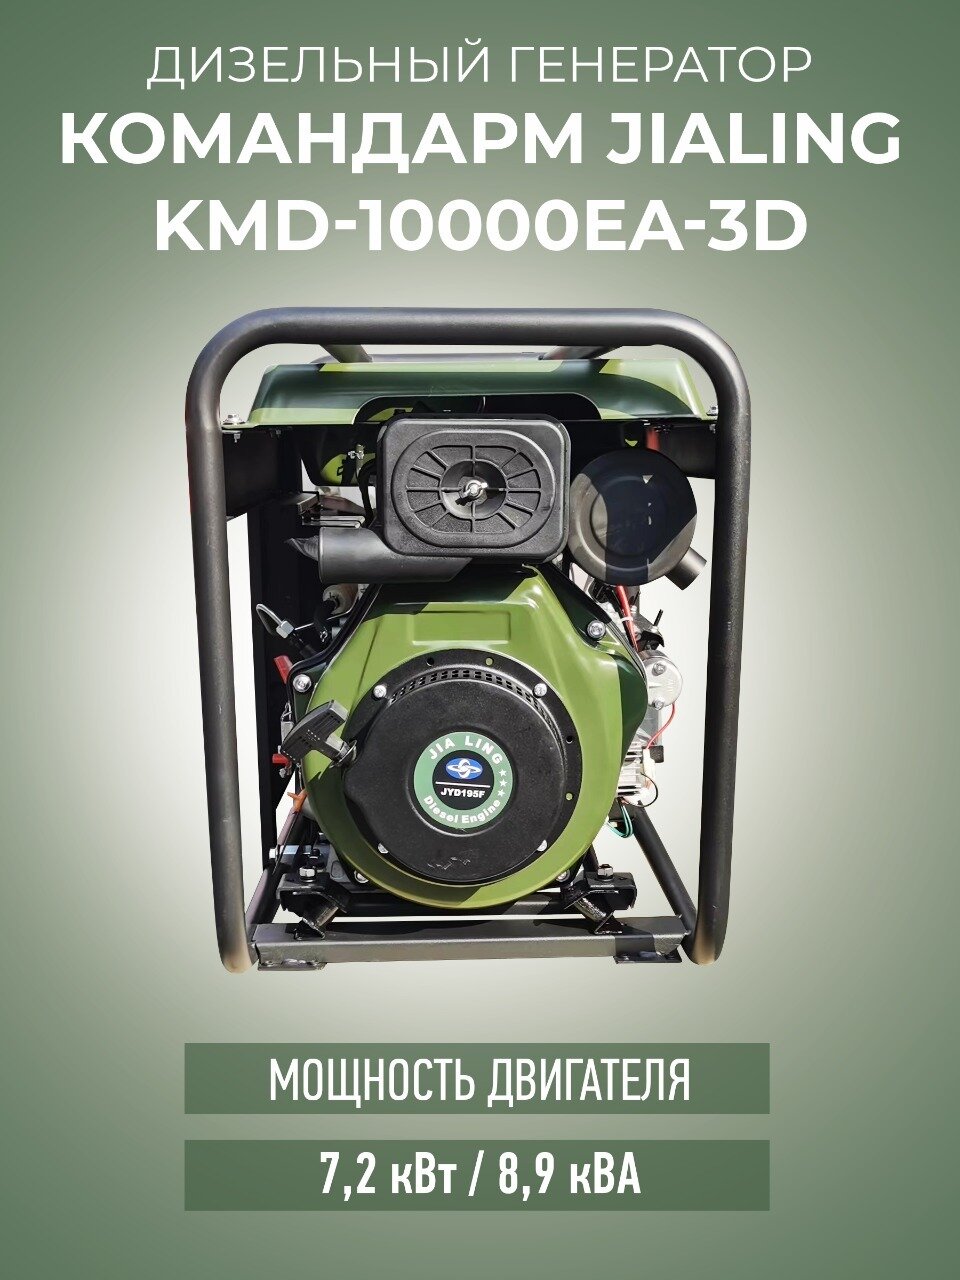 Генератор дизельный 6,5 кВт Командарм KMD-10000EA-3D с электро стартером